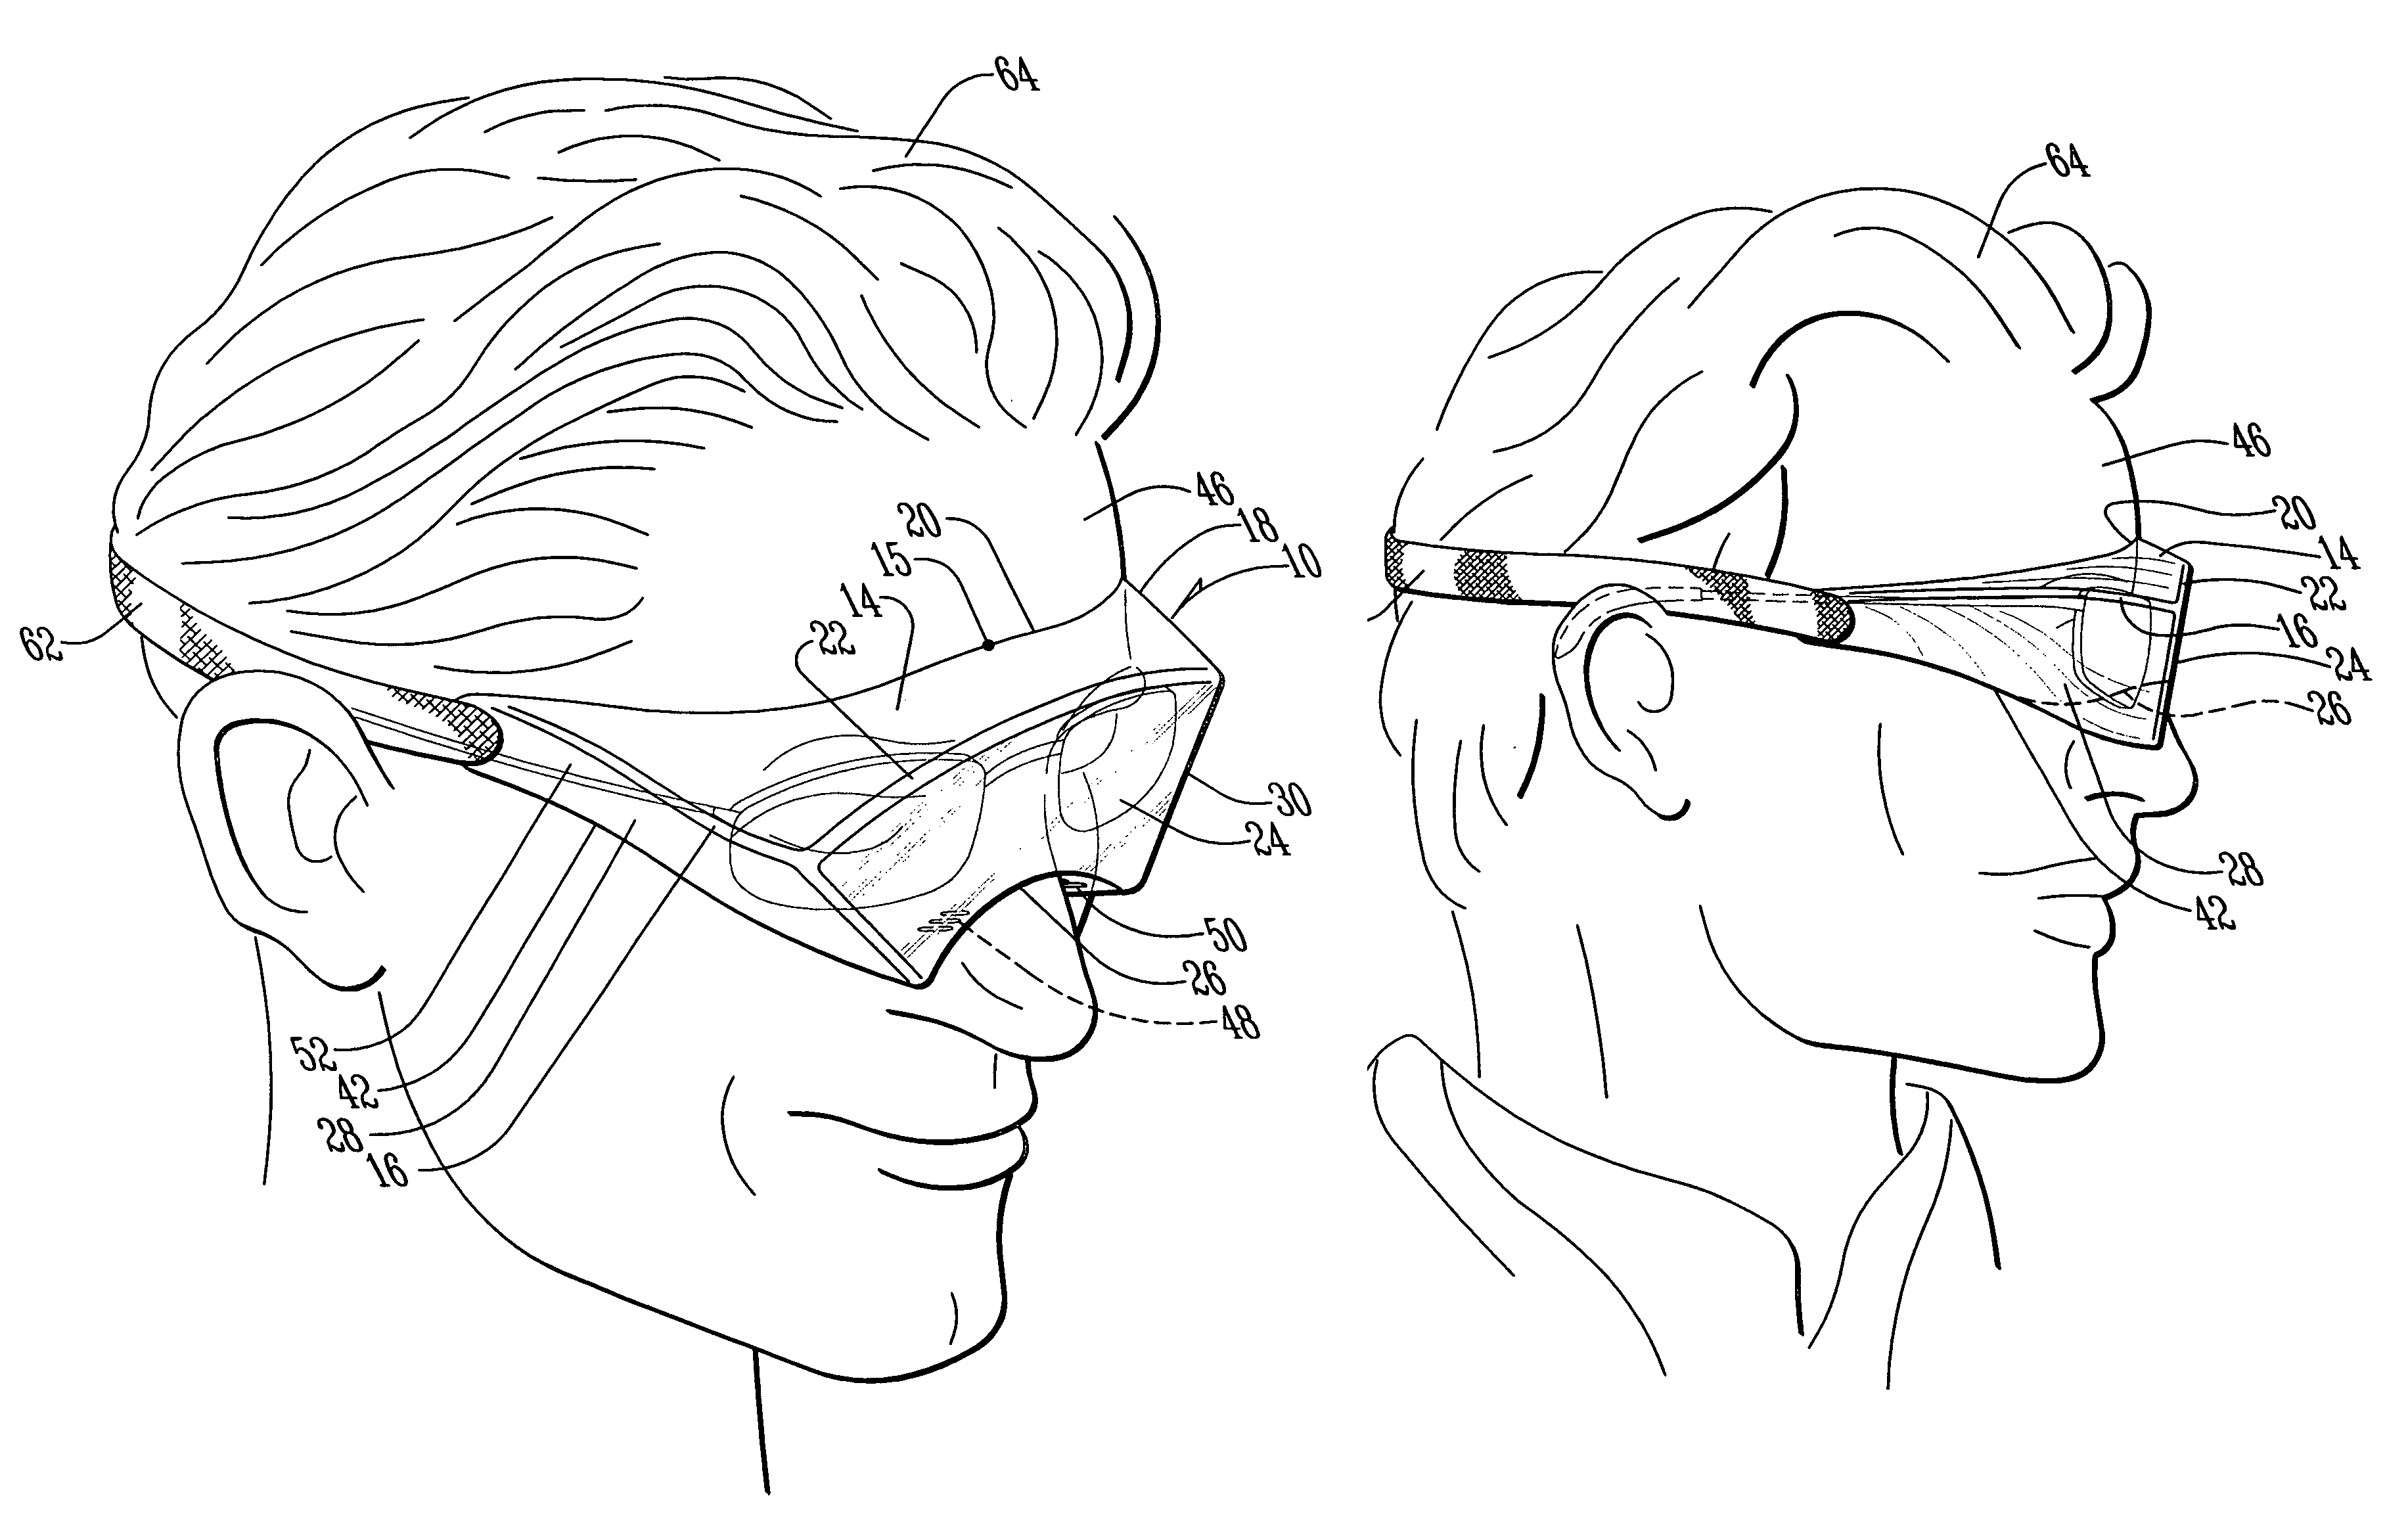 Multi-purpose goggle